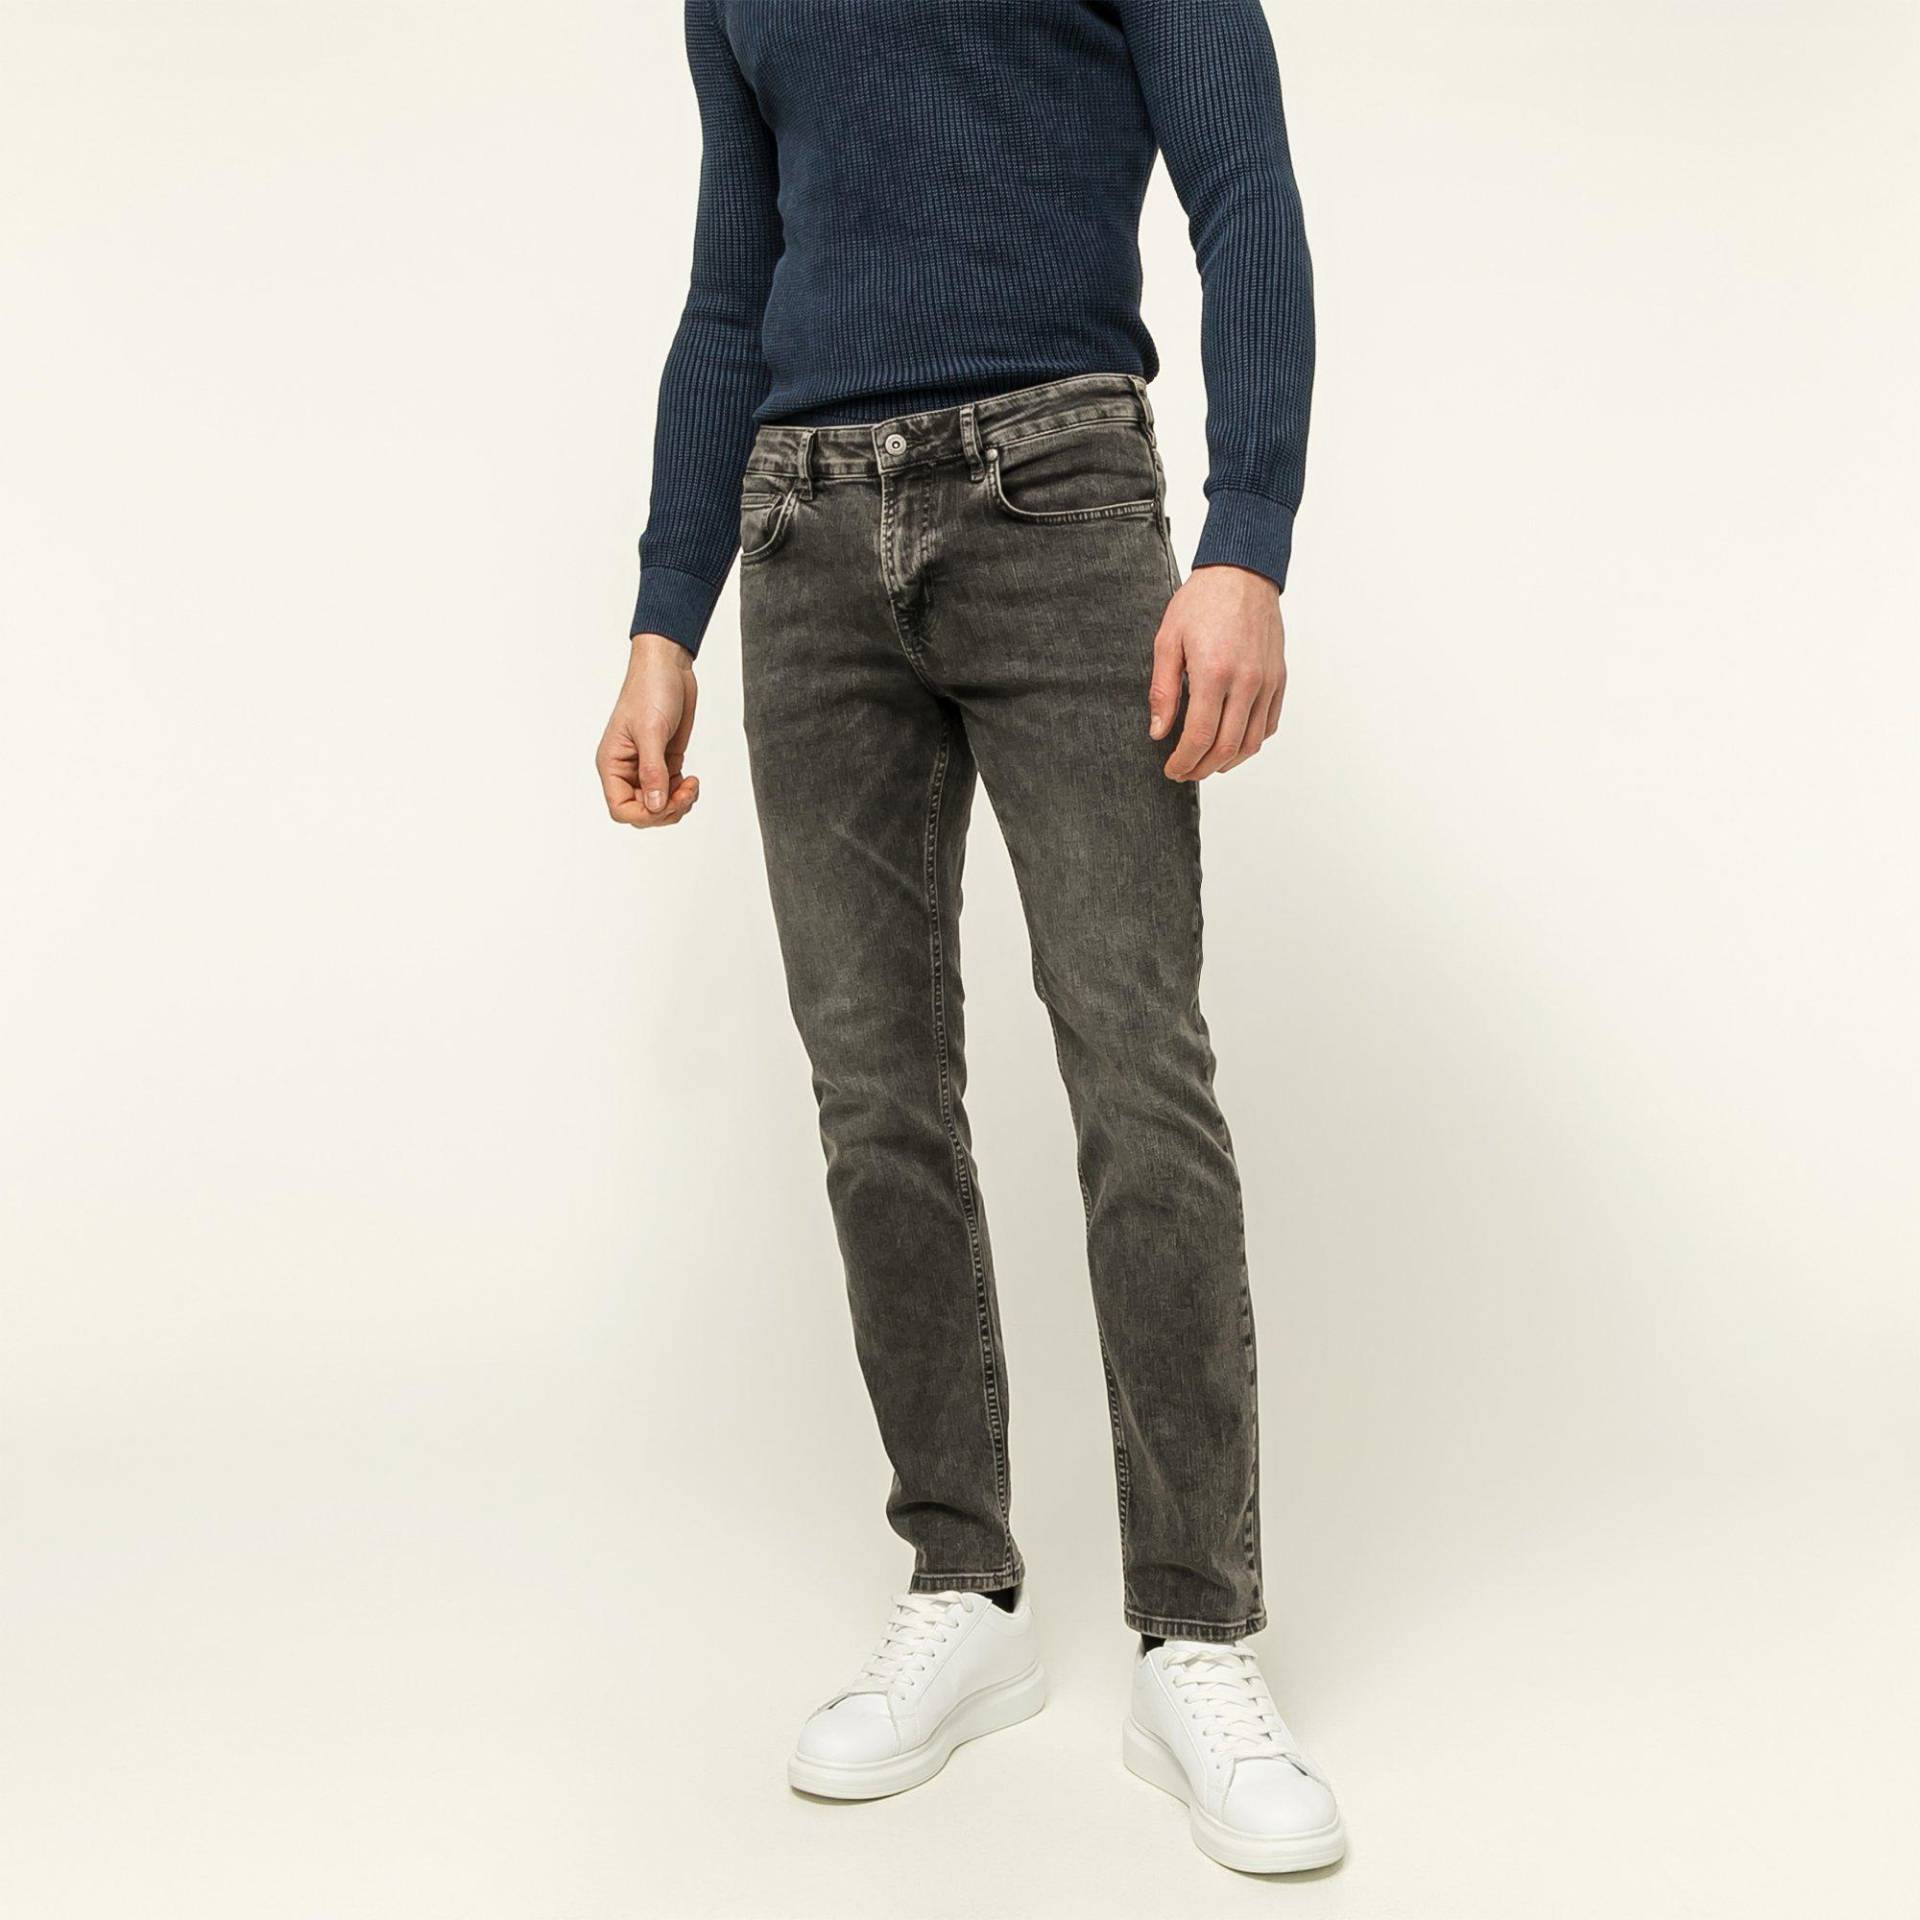 Jeans, Slim Fit Herren Grau L34/W32 von Manor Man